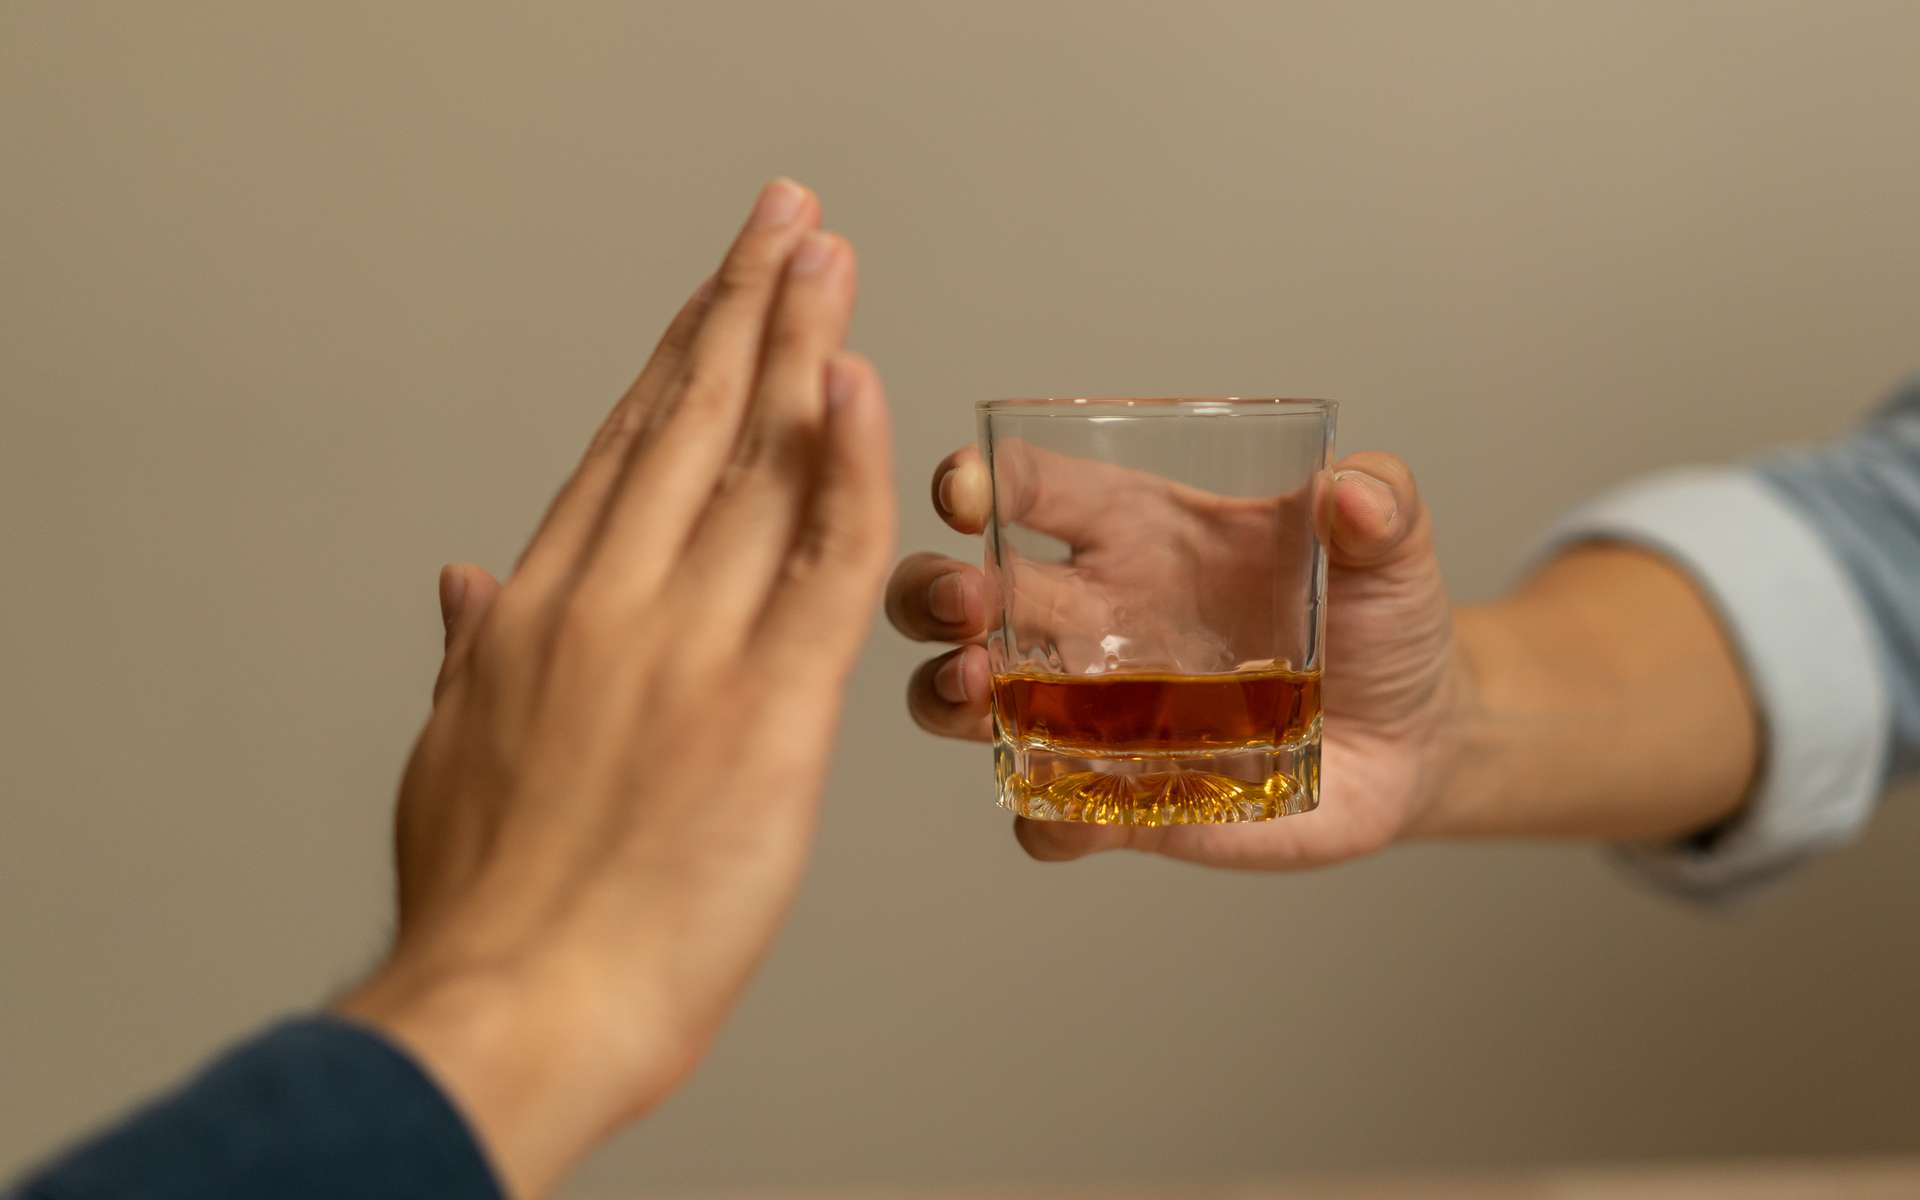 7 mois sans alcool suffisent à réparer les dommages cérébraux causés par une consommation excessive